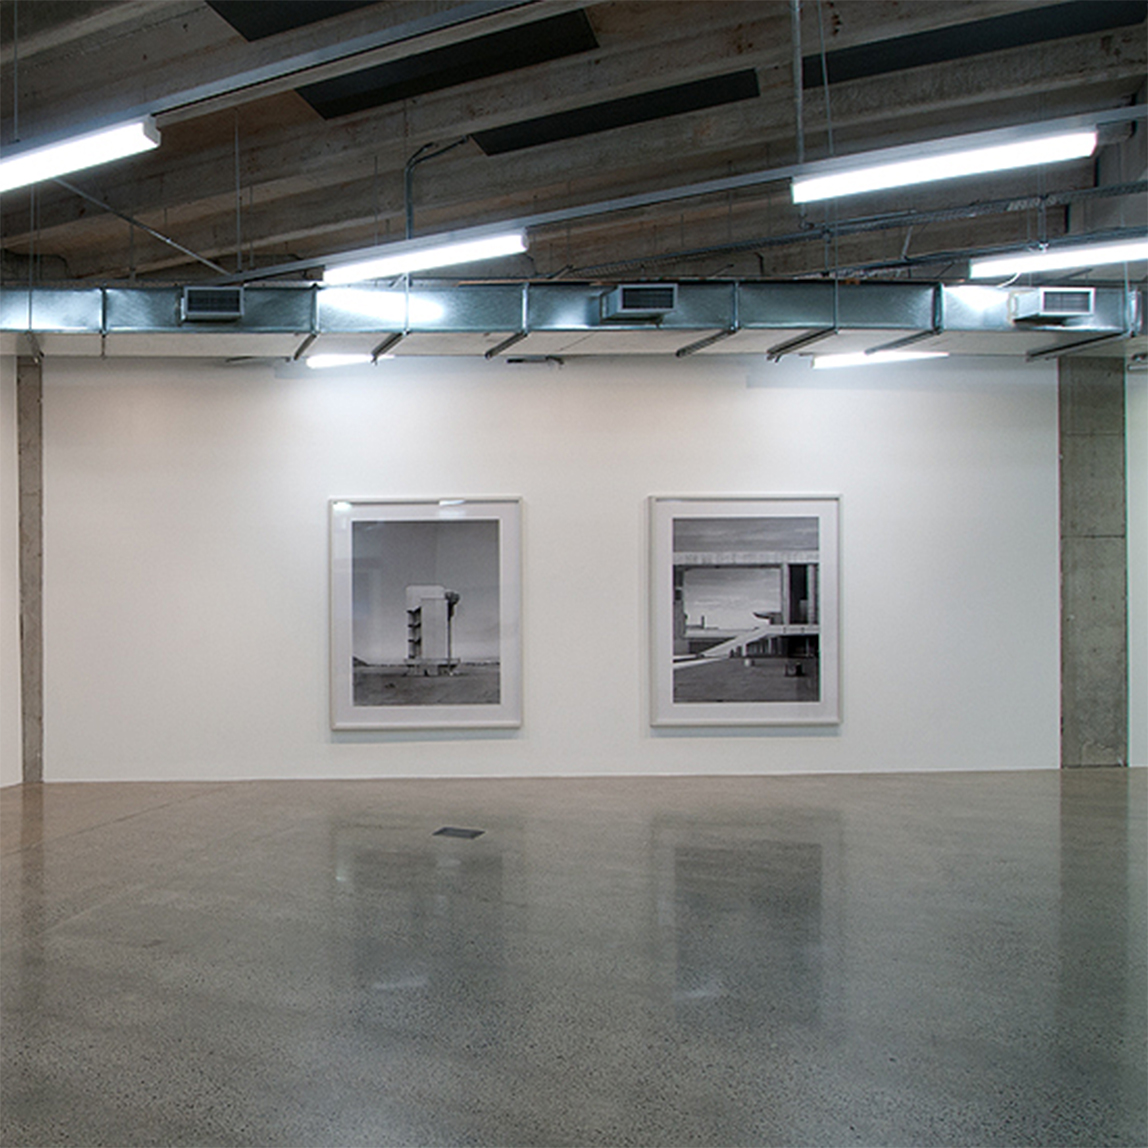 Beate Gutschow, 2011. Installation view.